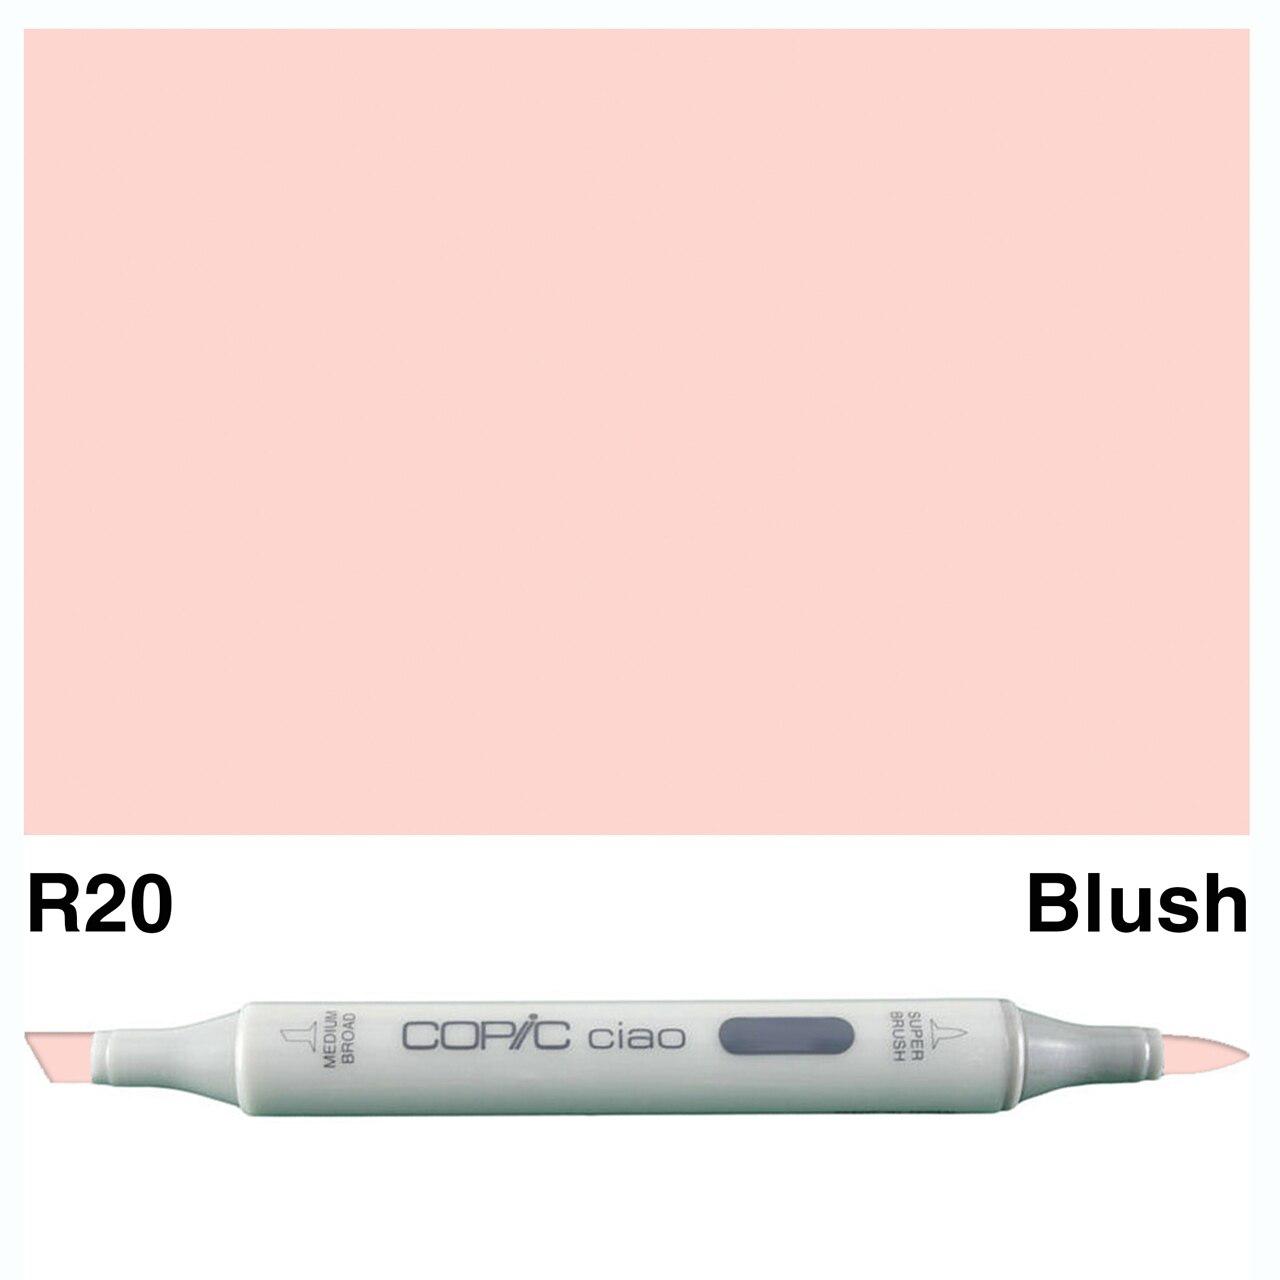 Copic - Ciao Marker - Blush - R20-ScrapbookPal